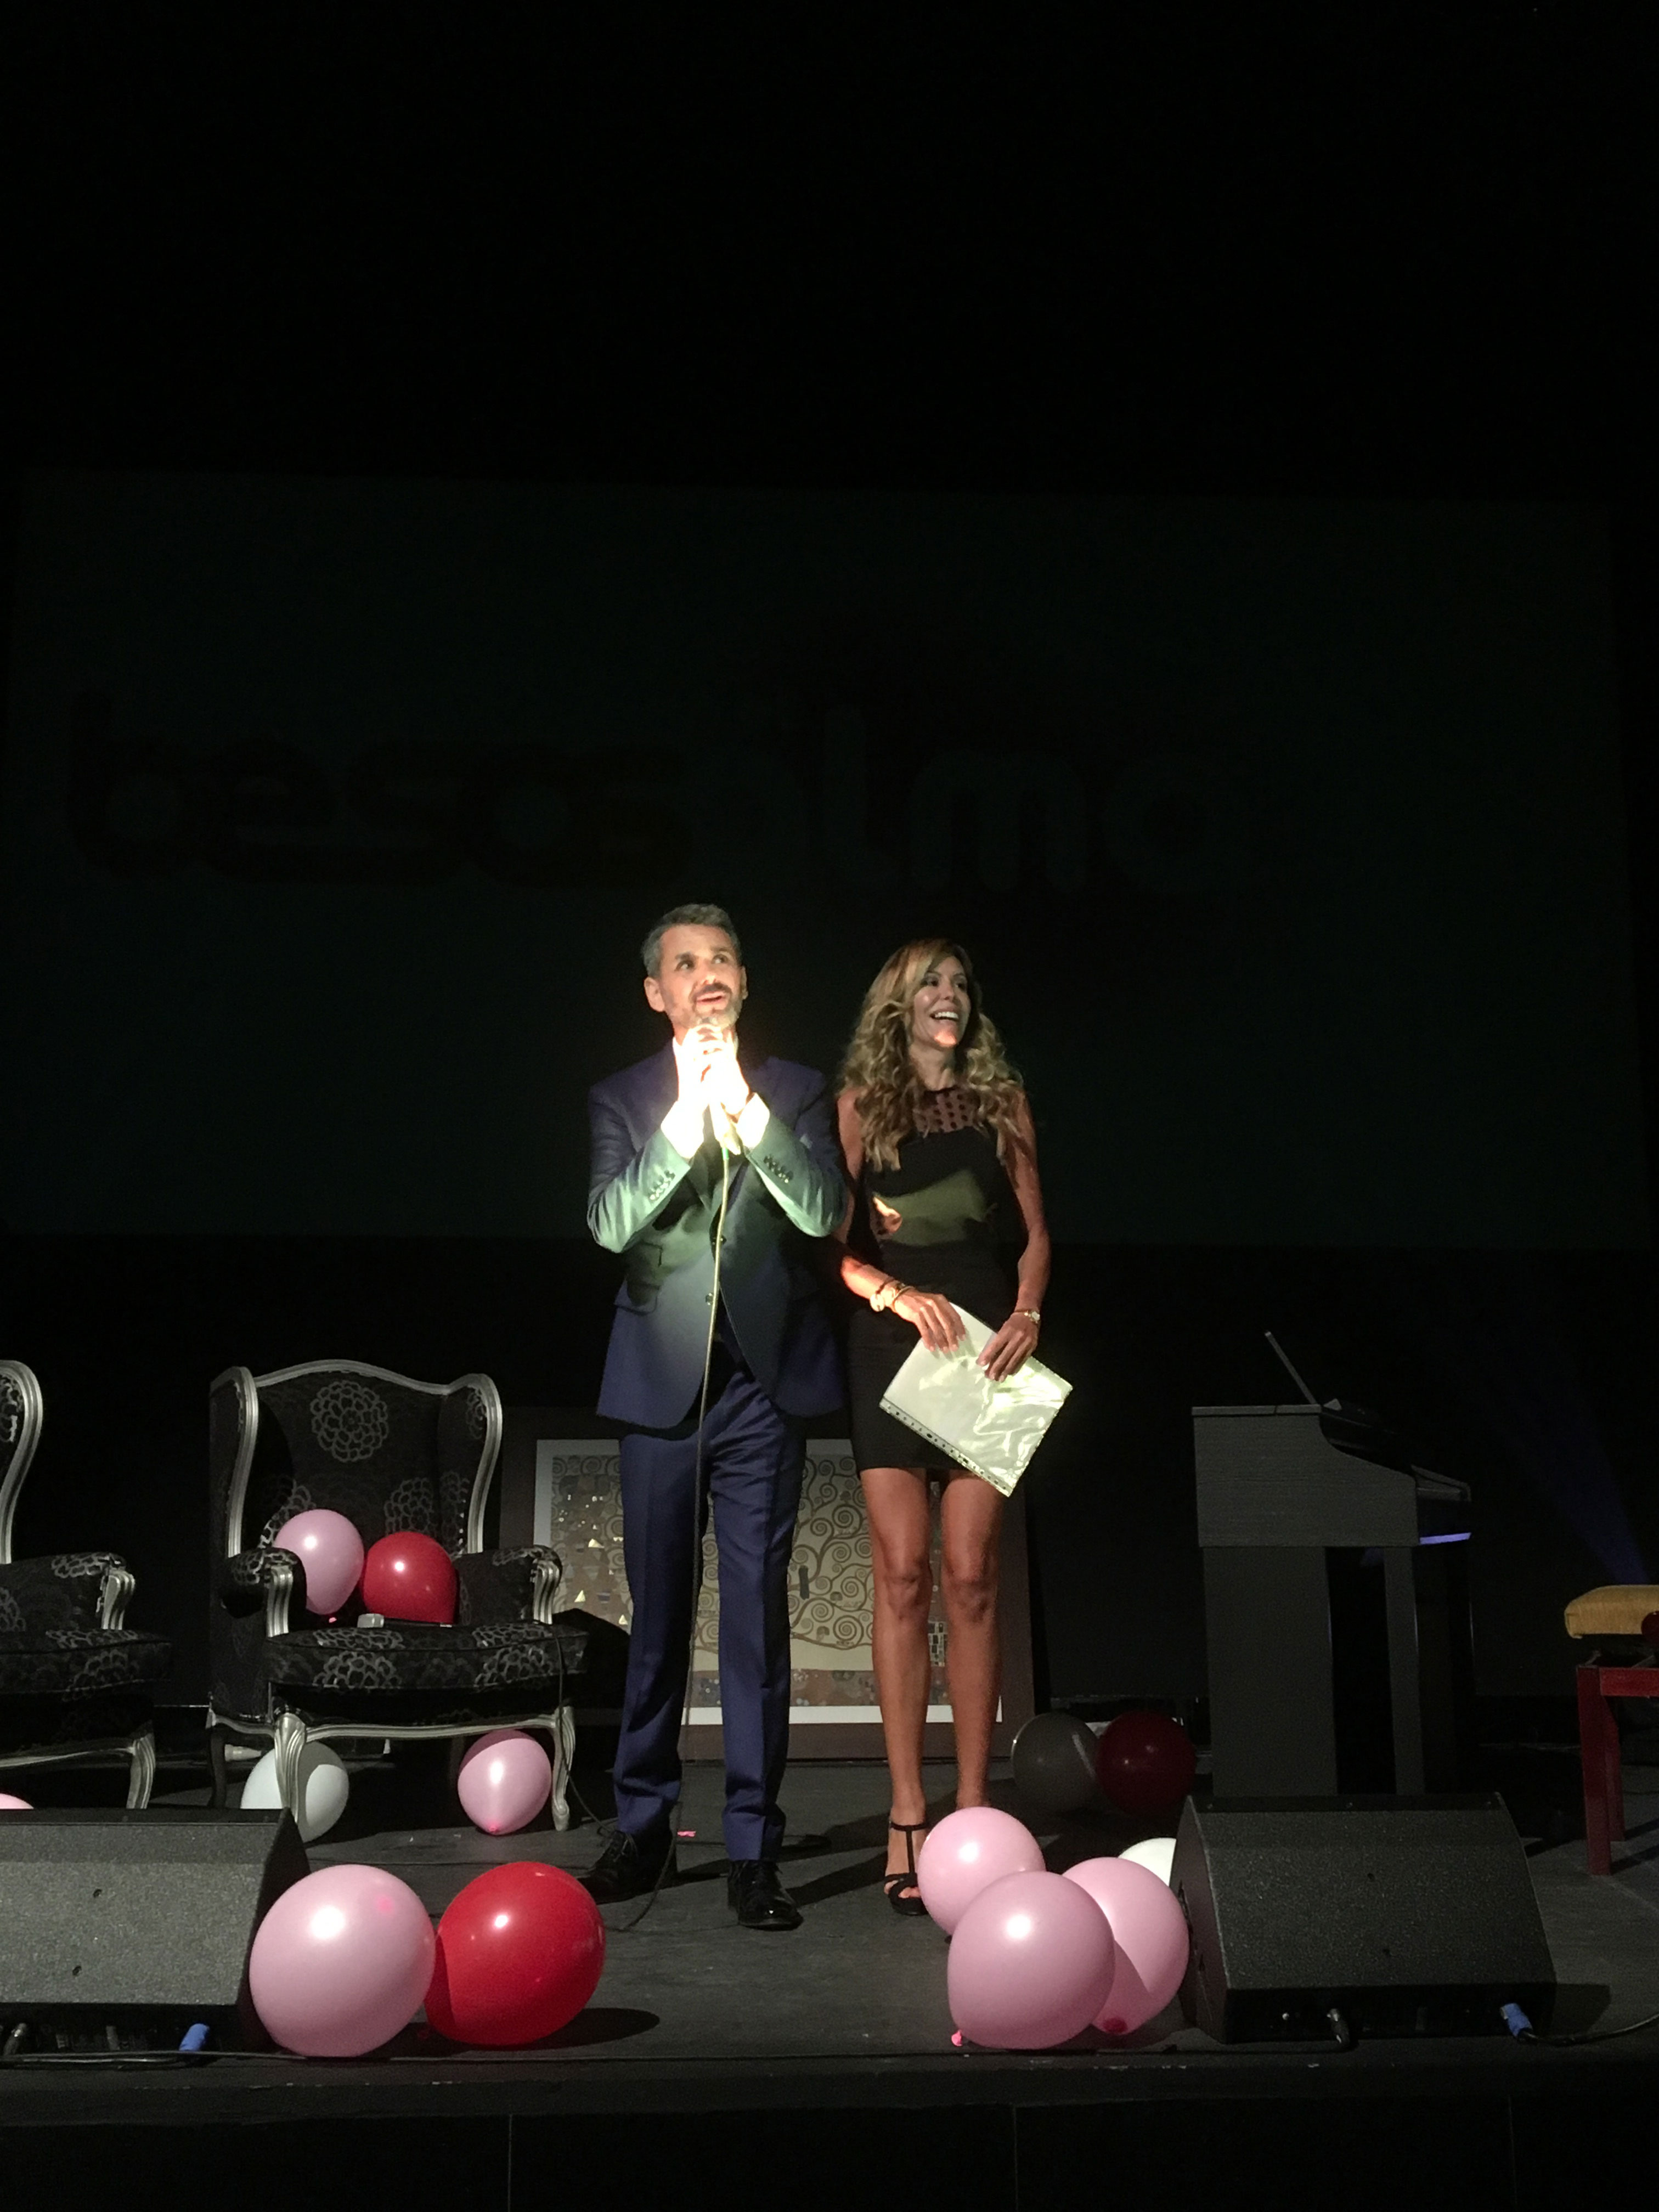 El actor Jorge Lucas presenta su fundación contra el cáncer